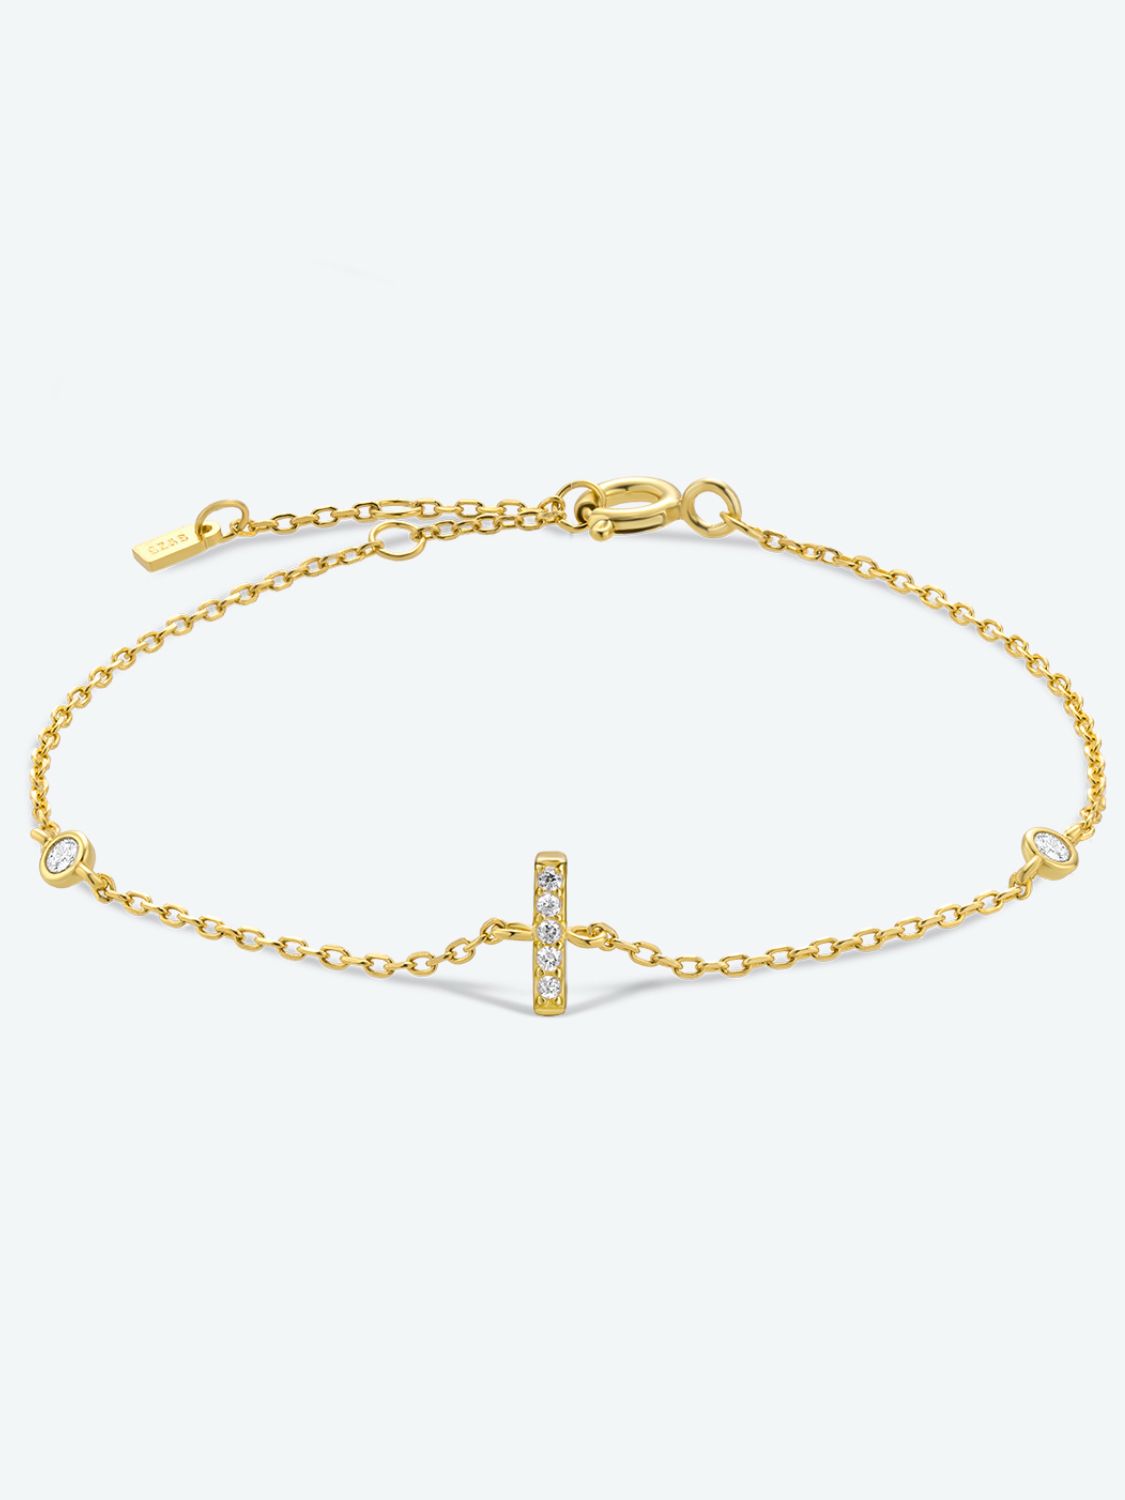 Zircon 925 Sterling Silver Bracelet - I-Gold / One Size - Women’s Jewelry - Bracelets - 13 - 2024